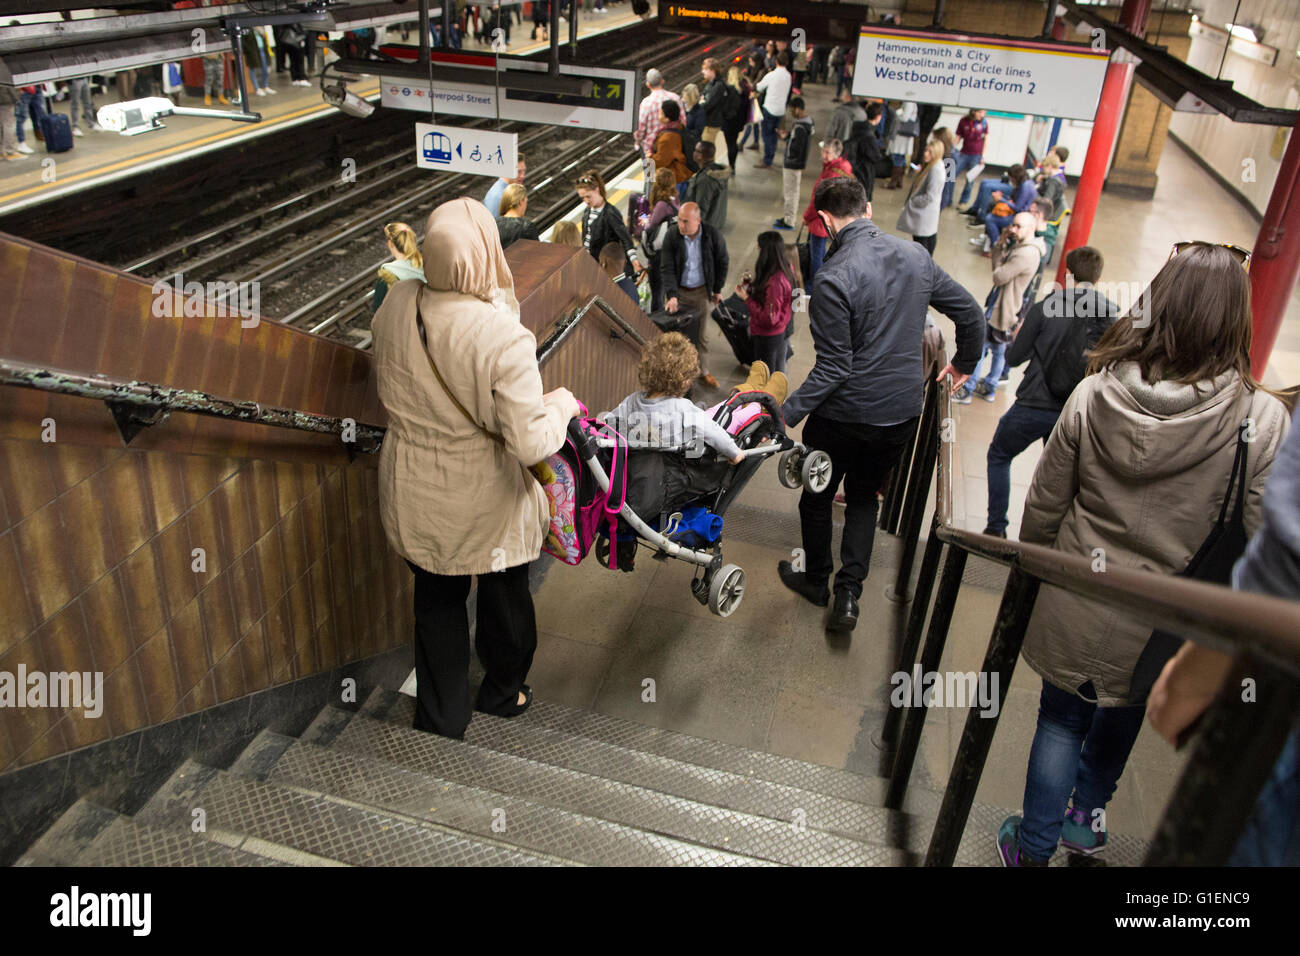 Les gens sur le métro de Londres à Londres, à la station de métro de Liverpool, Londres, UK Banque D'Images